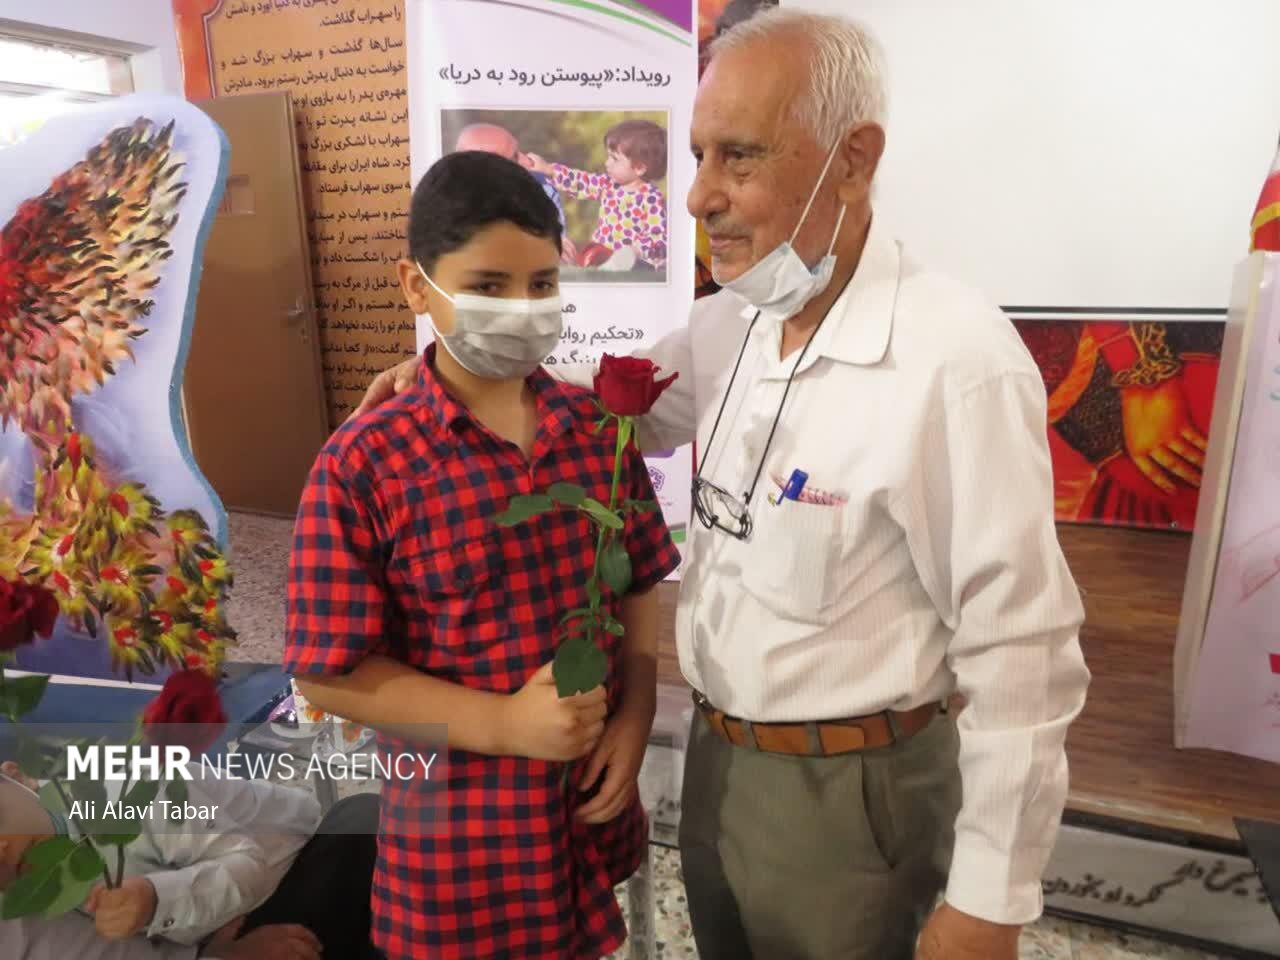 مراسم گرامیداشت هفته ملی سالمند در بوشهر برگزار شد